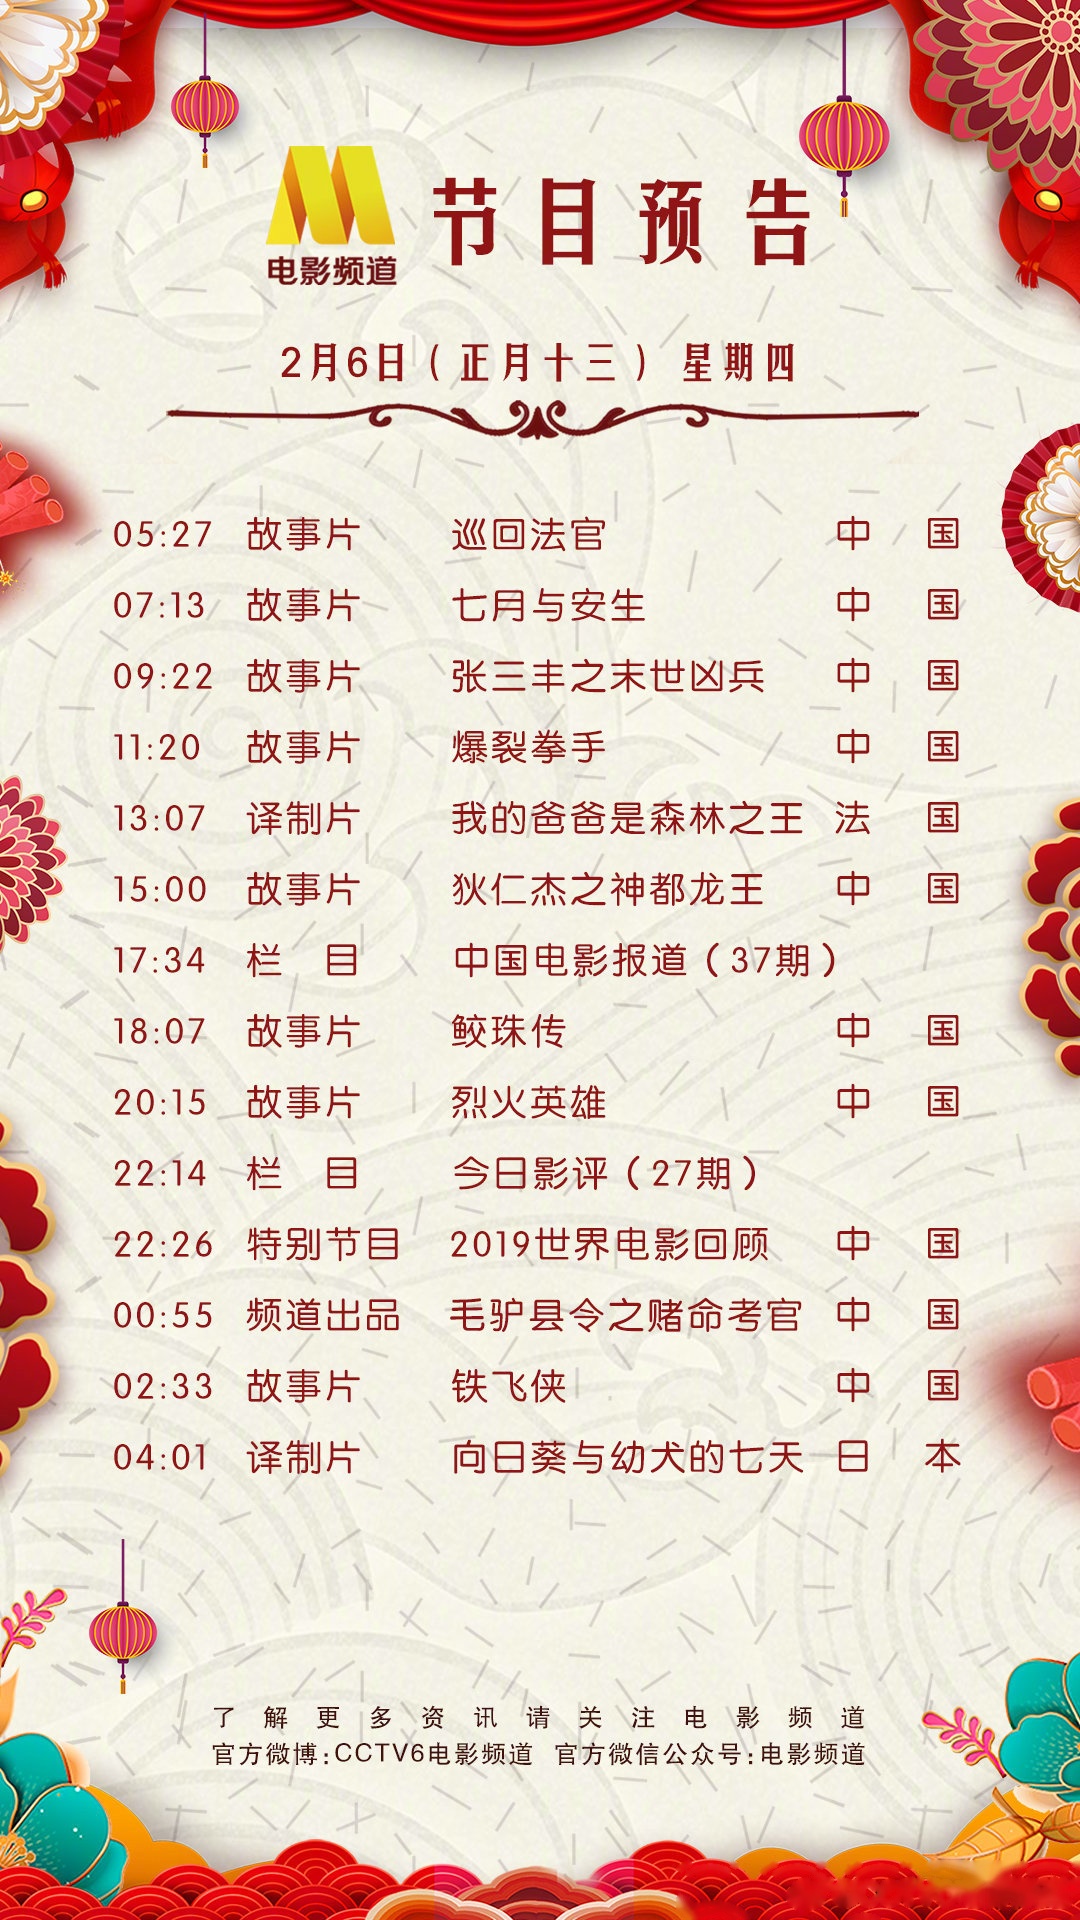 cctv6电影频道节目单今日重点推荐:赵又廷,冯绍峰,林更新,杨颖,刘嘉玲